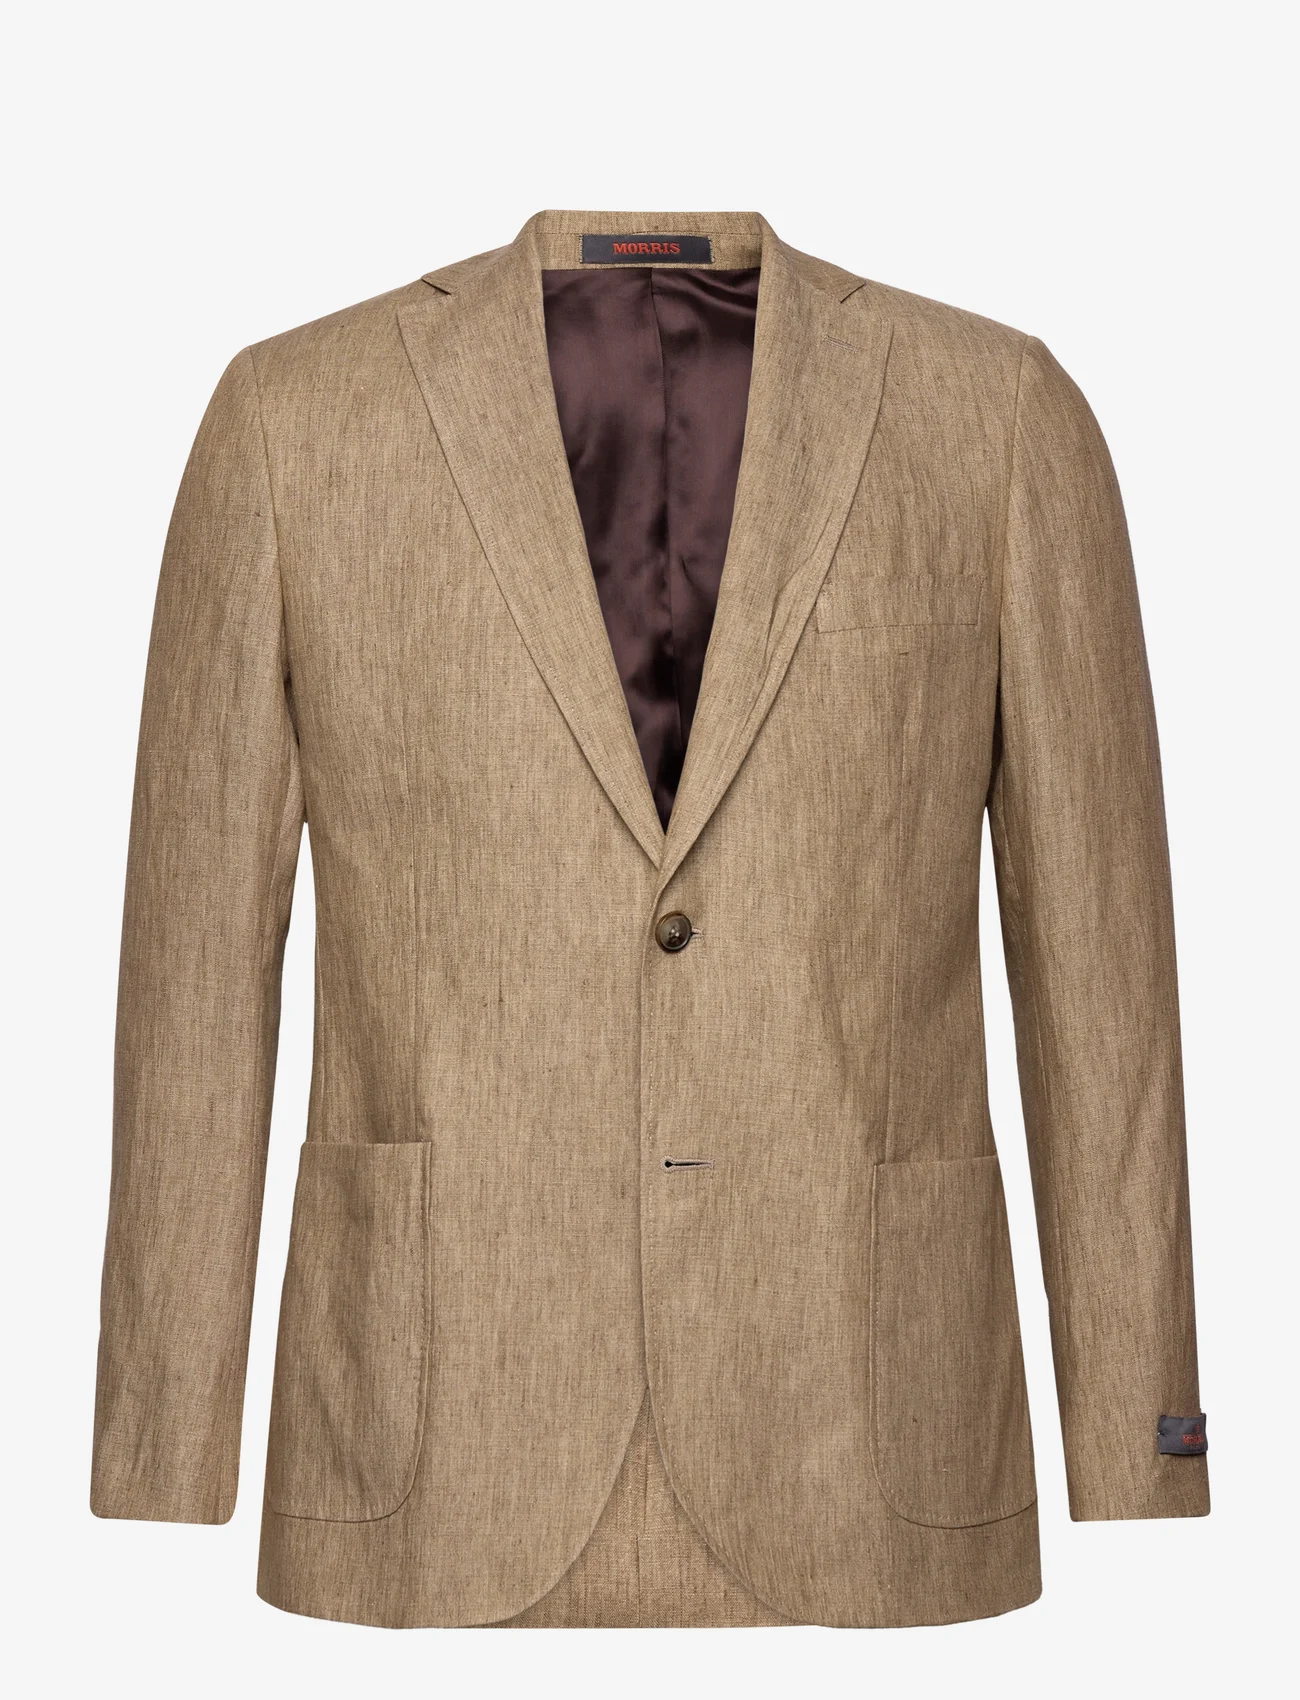 Morris - Archie Linen Suit Jkt - double breasted blazers - khaki - 0